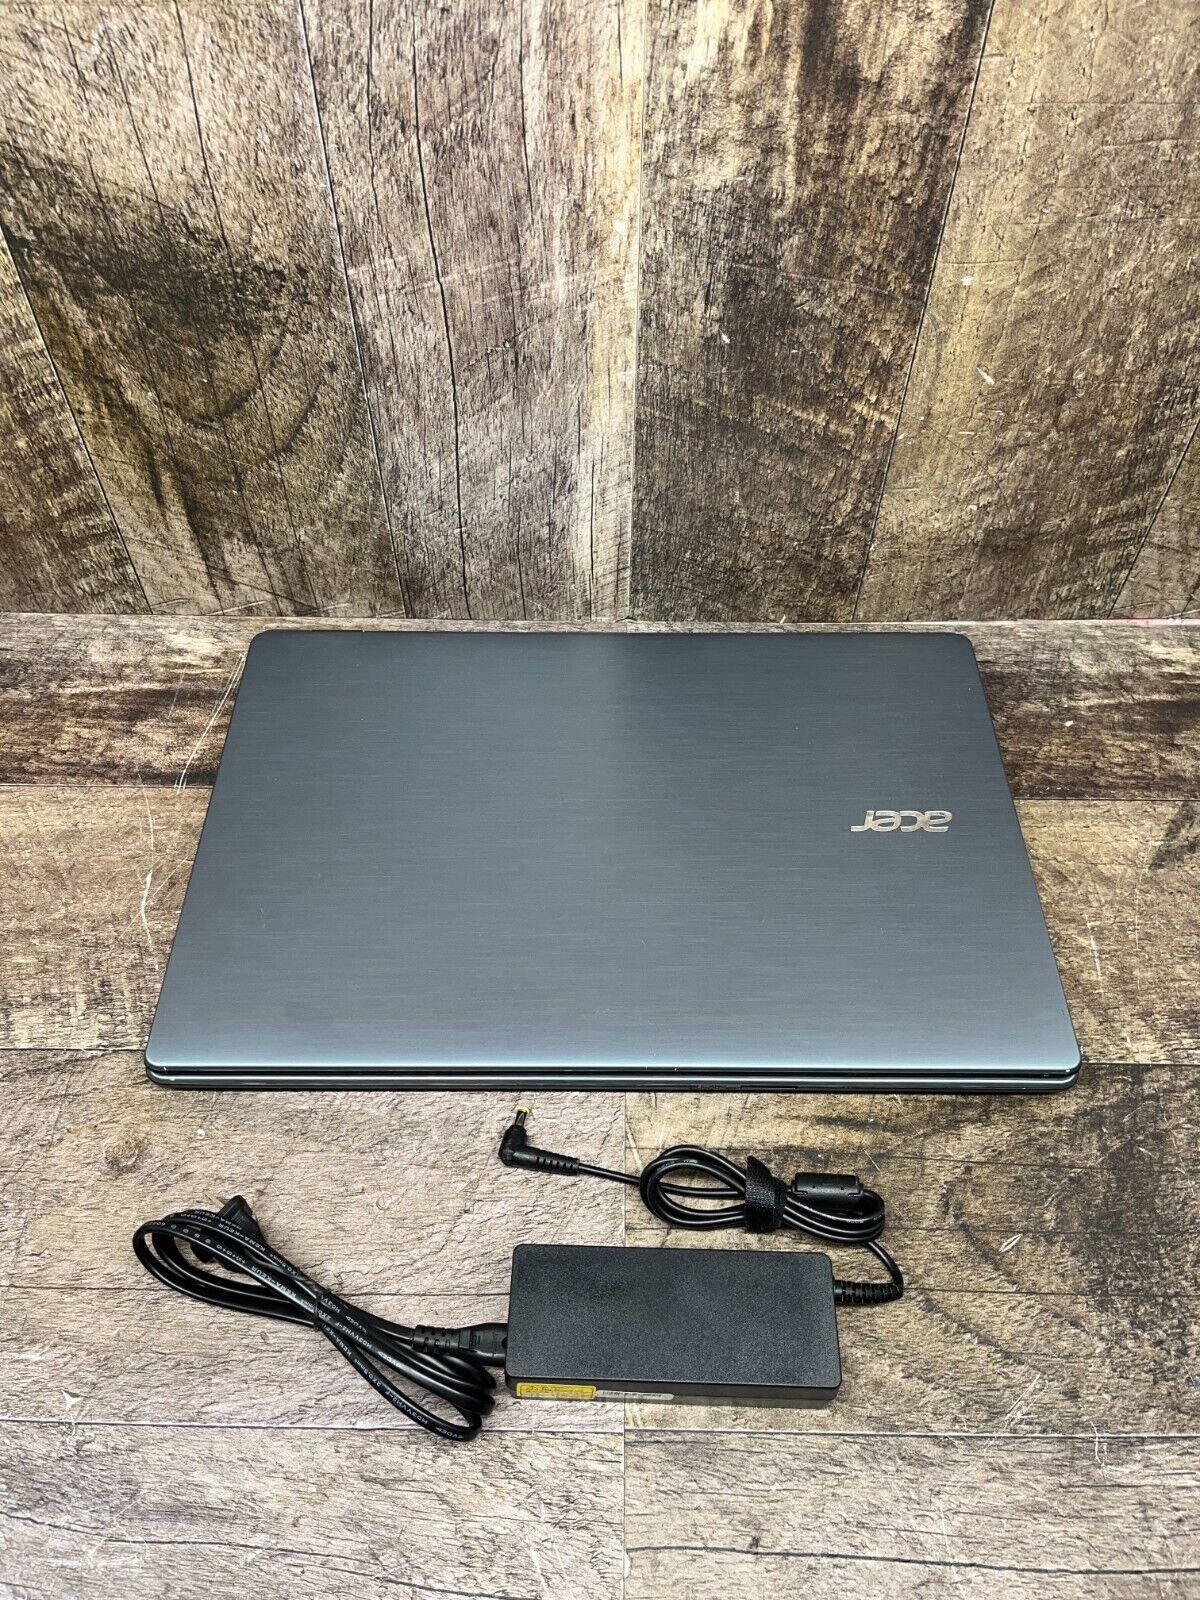 Acer Aspire E17 E5-771G-52PR i5-5200U 8GB Ram 256GB SSD *TESTED WORKING*